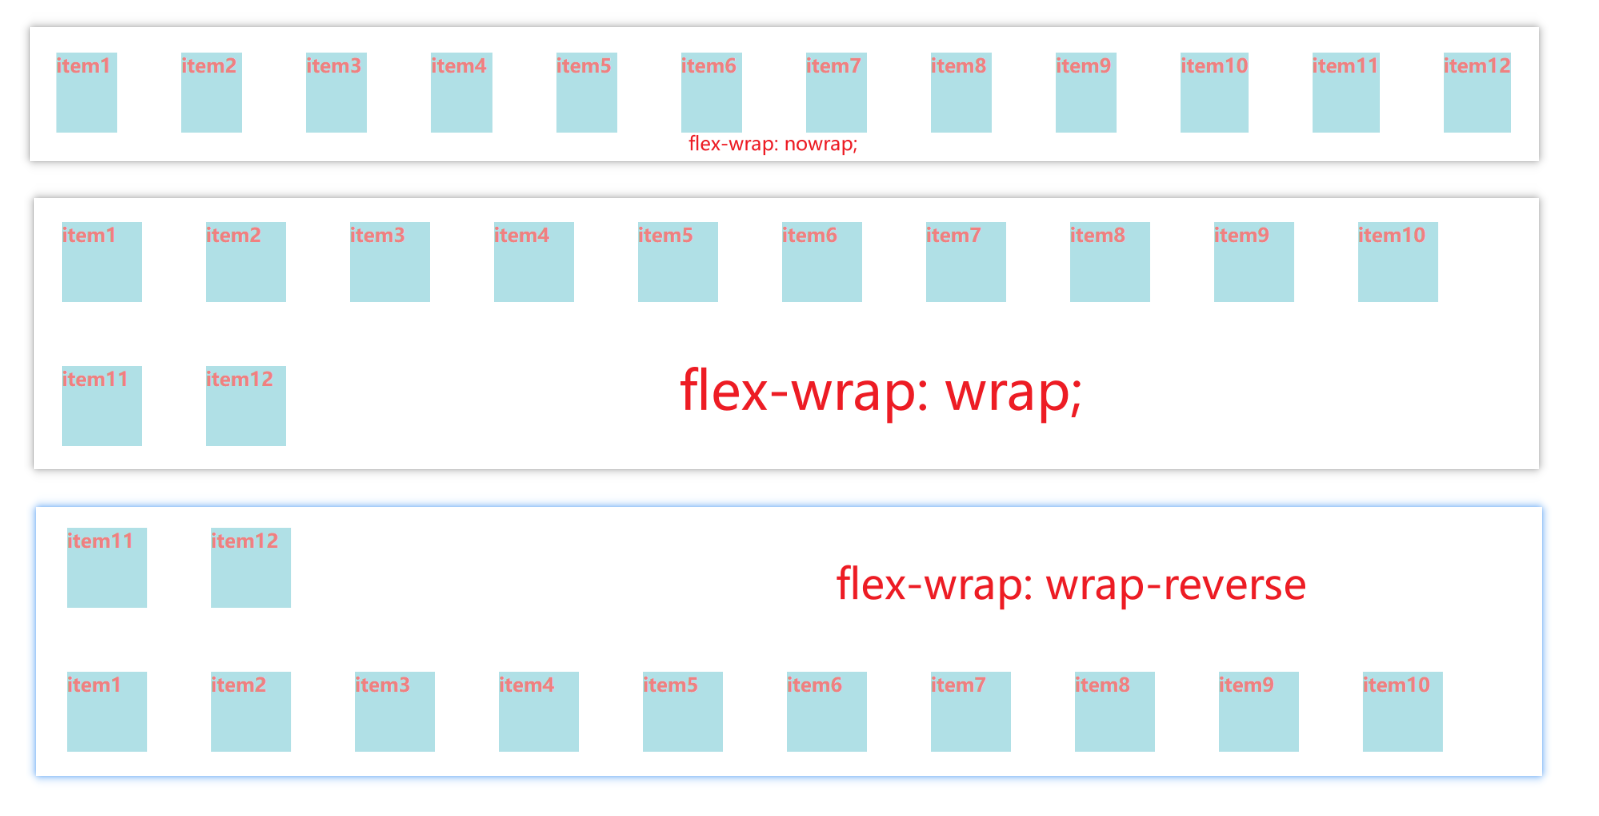 flex-wrap